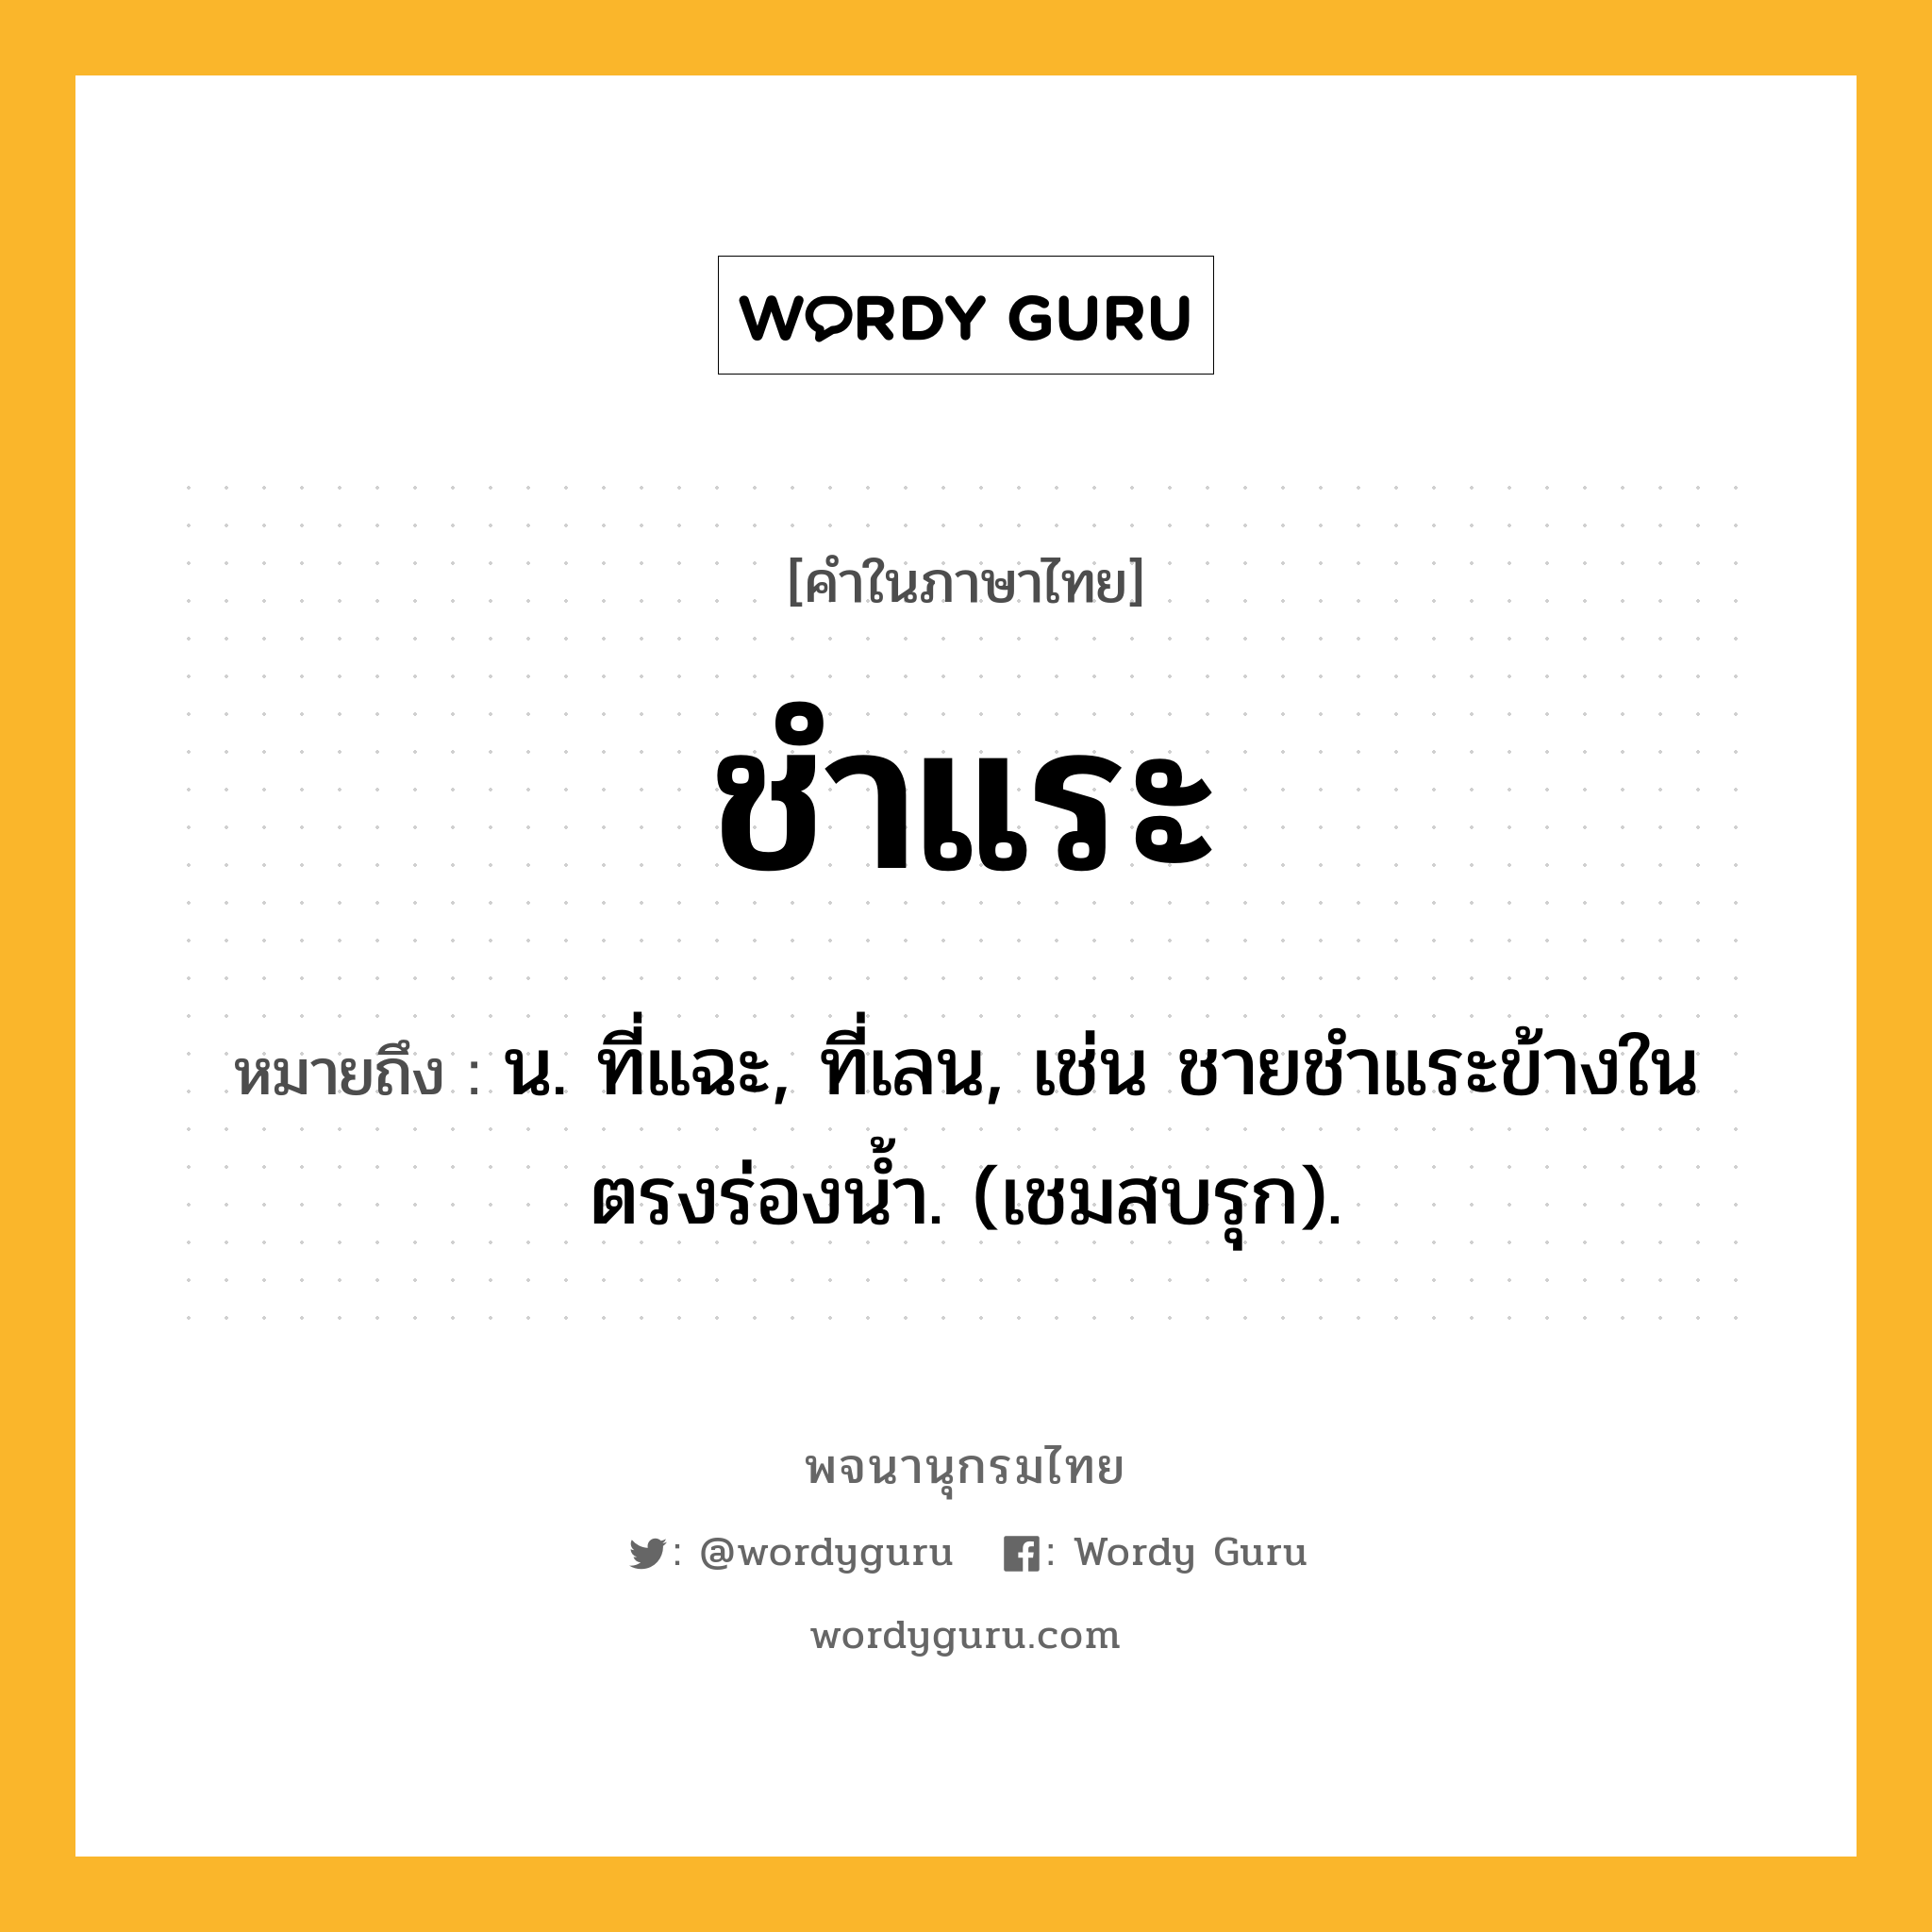 ชำแระ ความหมาย หมายถึงอะไร?, คำในภาษาไทย ชำแระ หมายถึง น. ที่แฉะ, ที่เลน, เช่น ชายชําแระข้างในตรงร่องนํ้า. (เชมสบรุก).